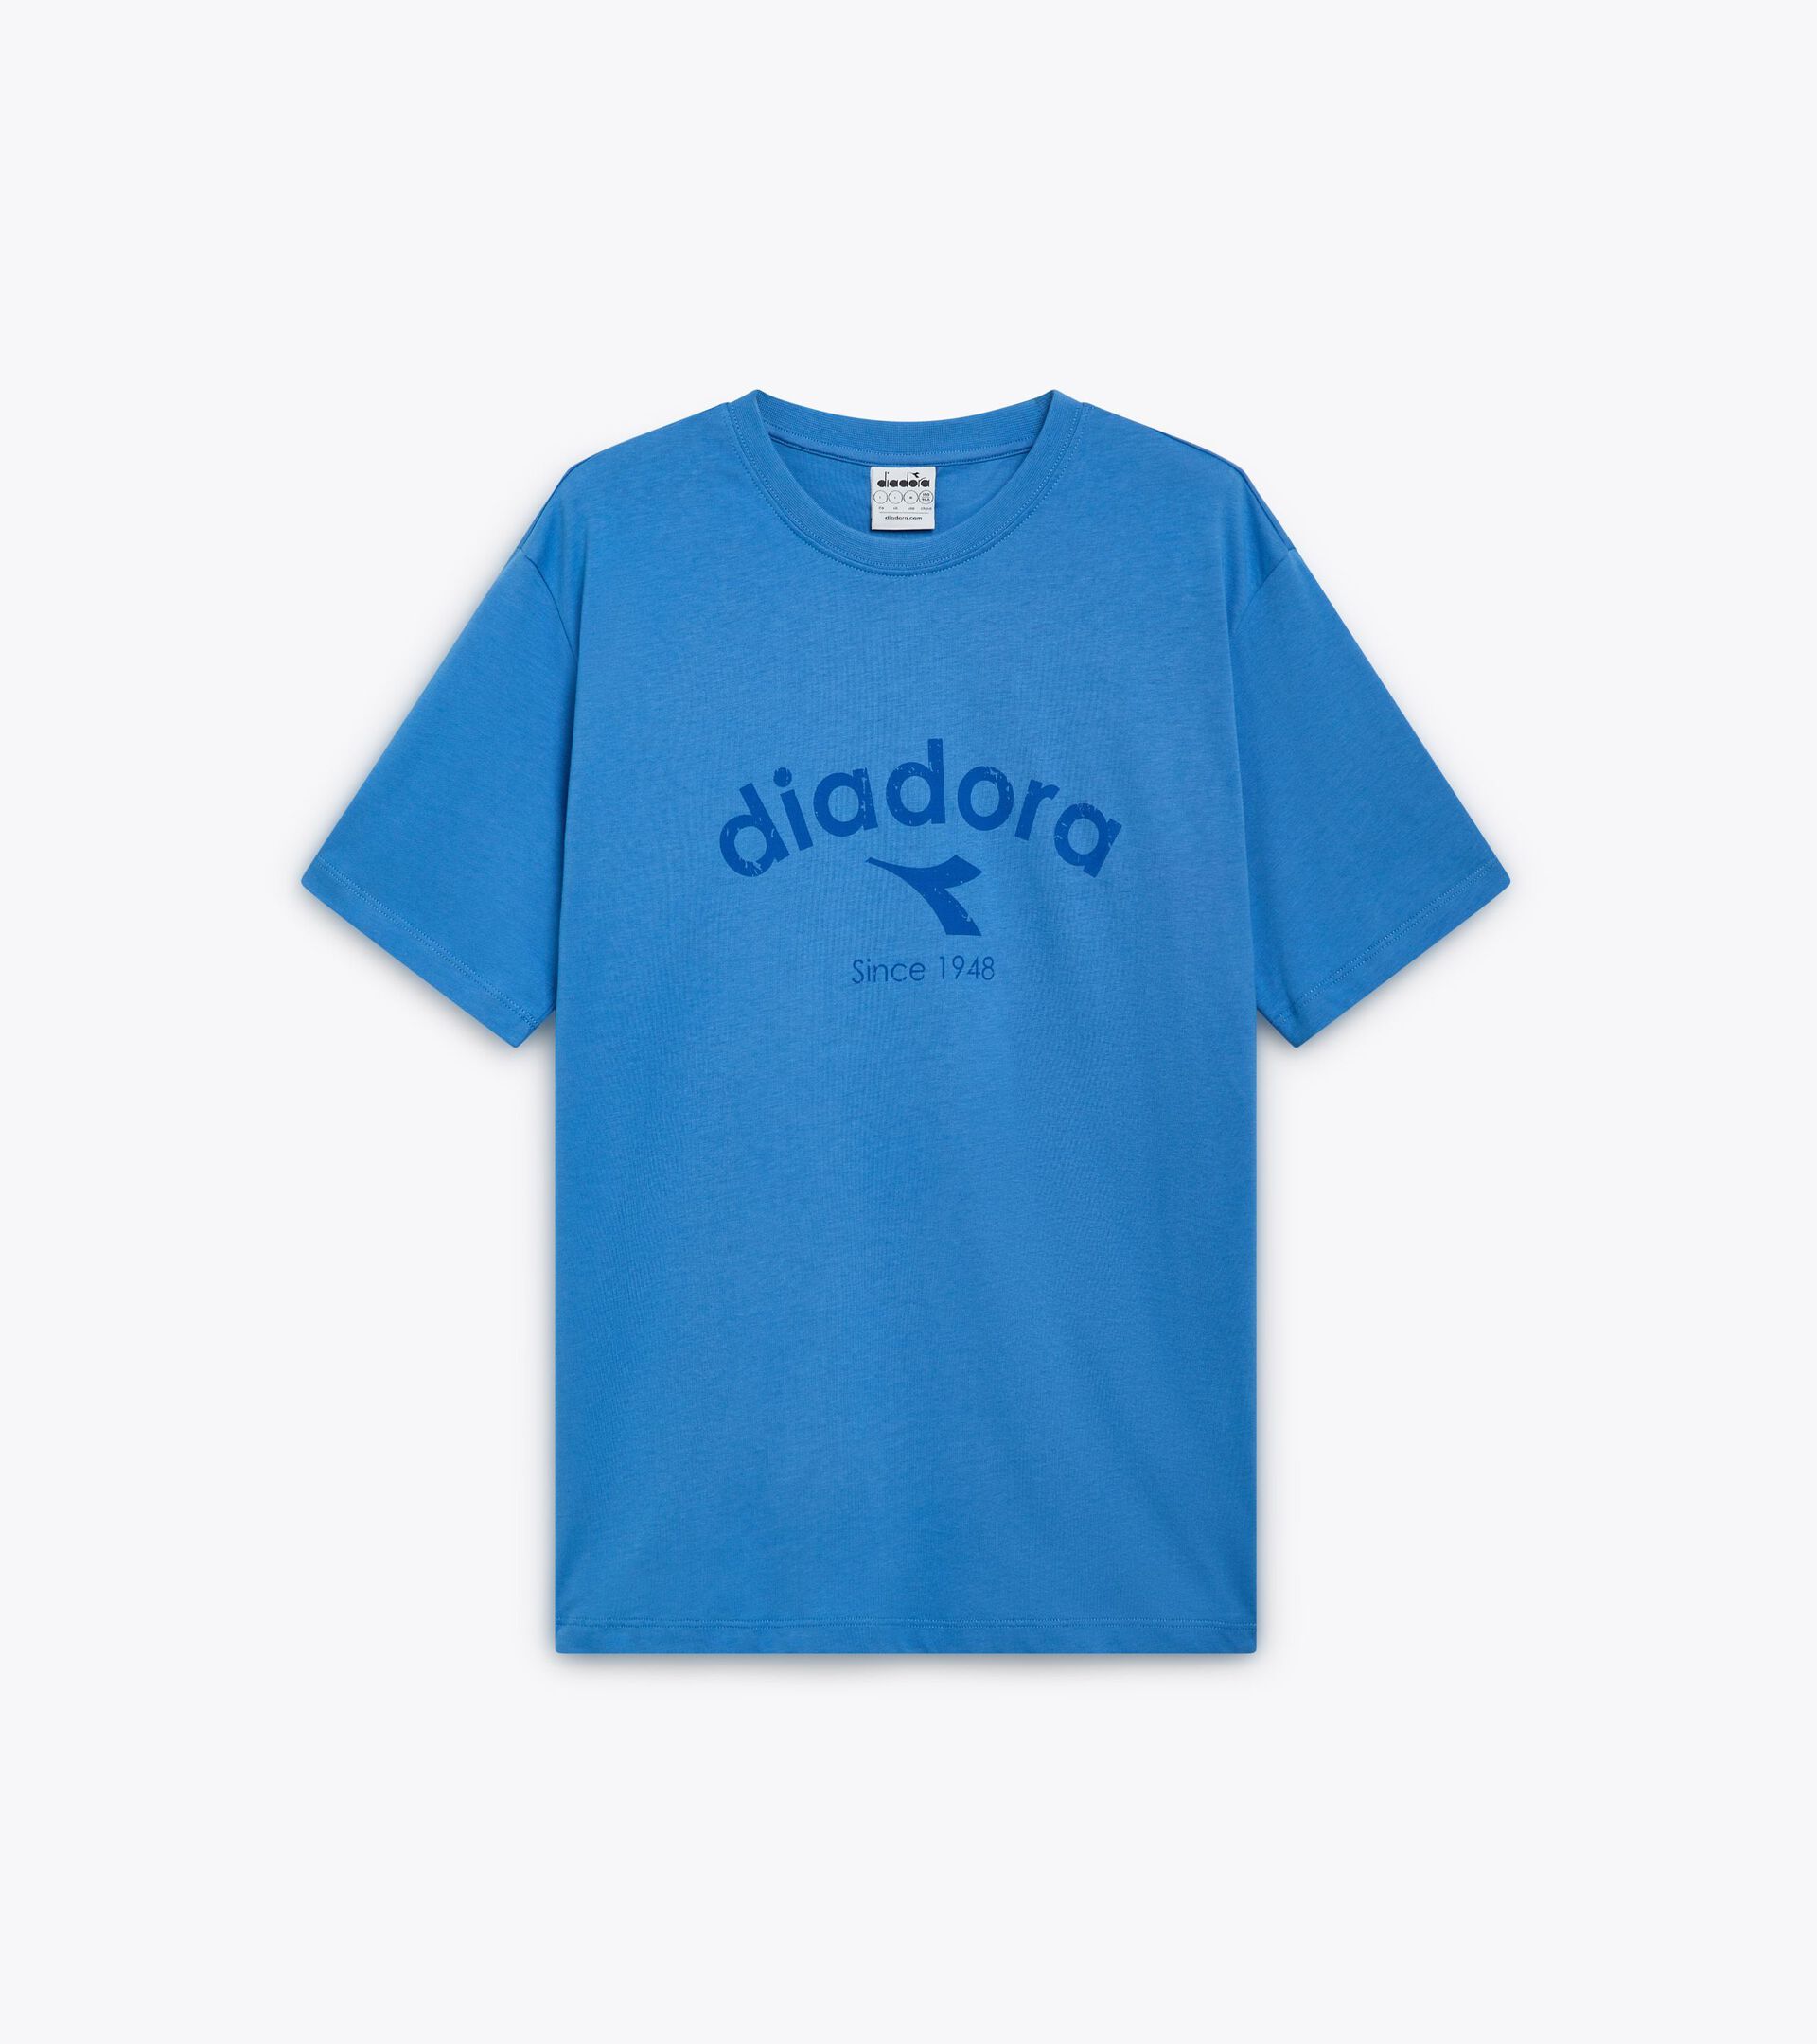 T-shirt - Gender Neutral T-SHIRT SS ATHL. LOGO AZZURRO COSTA PACIFICO - Diadora